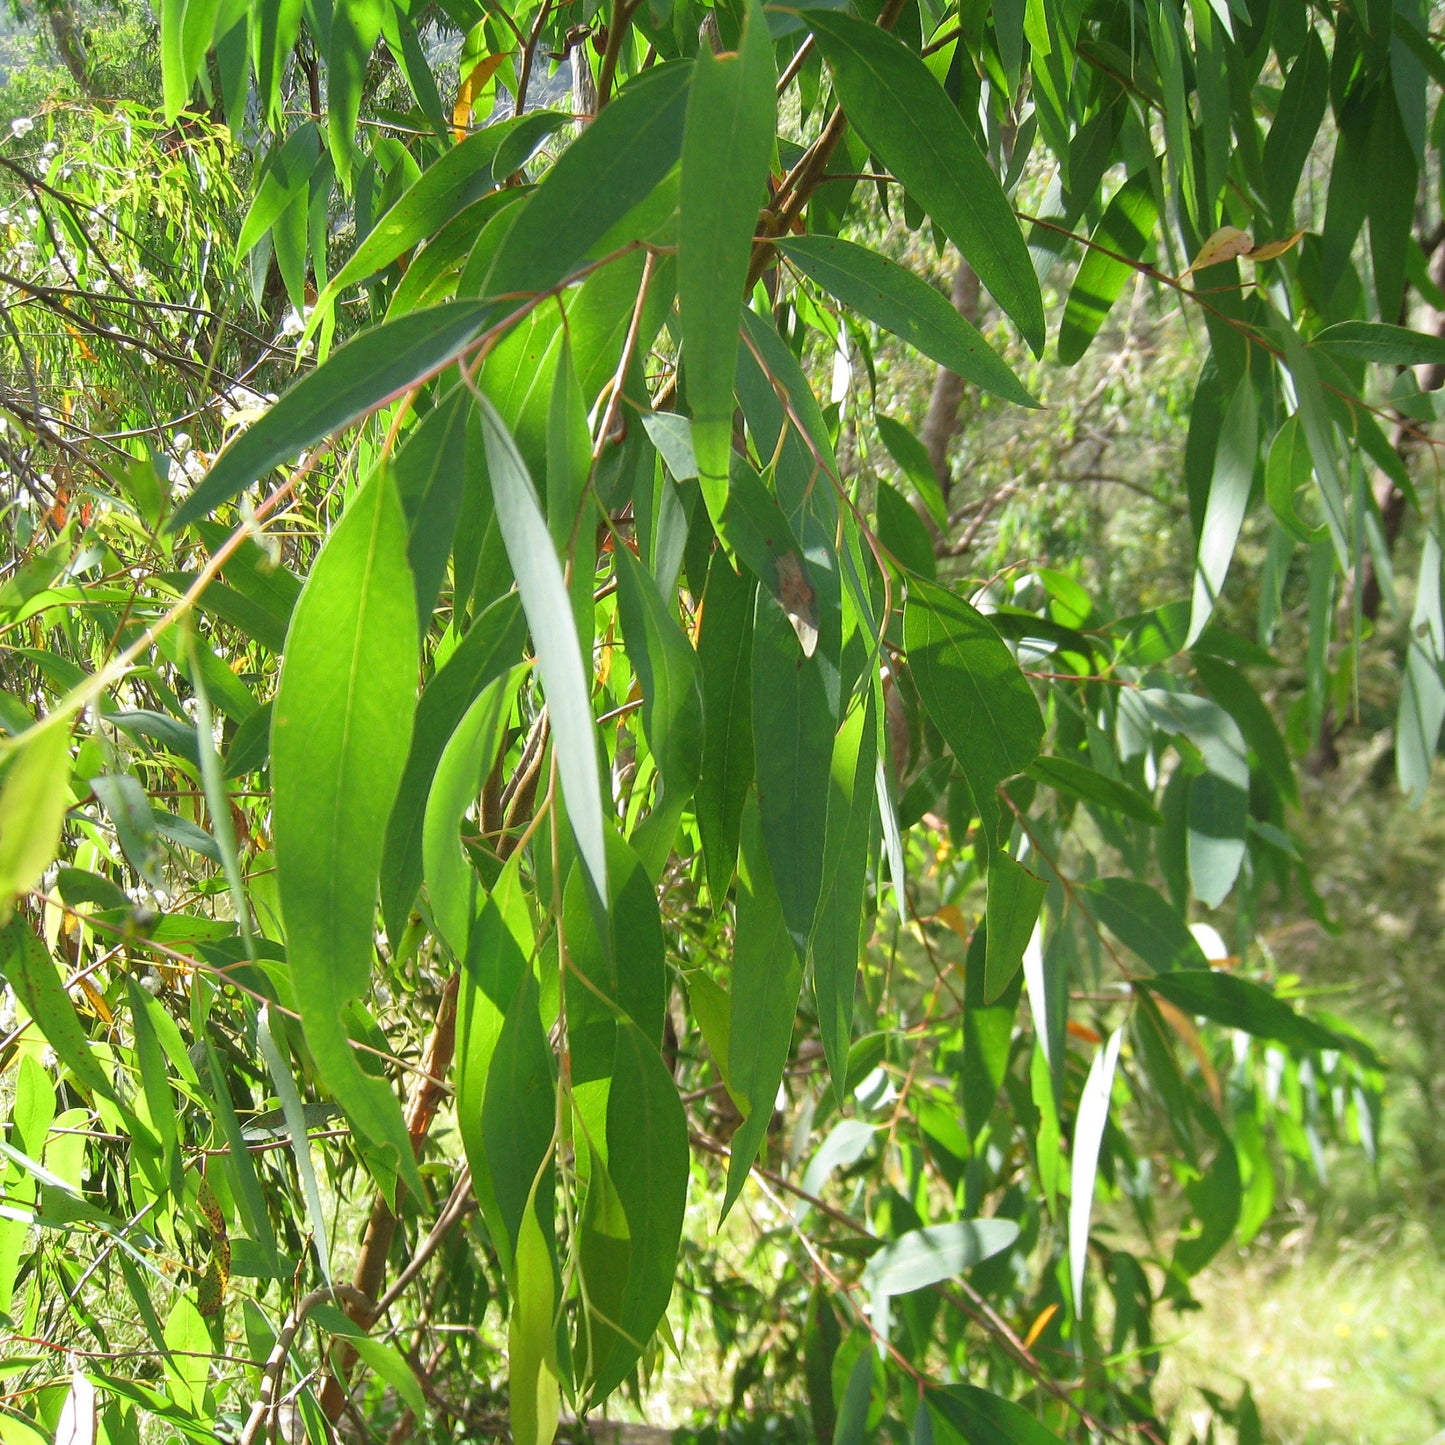 Eucalyptus Radiata Essential Oil | Organic Essential Oil Eucalyptus Radiata | 100% Pure Essential Oil | Therapeutic Essential Oil Eucalyptus